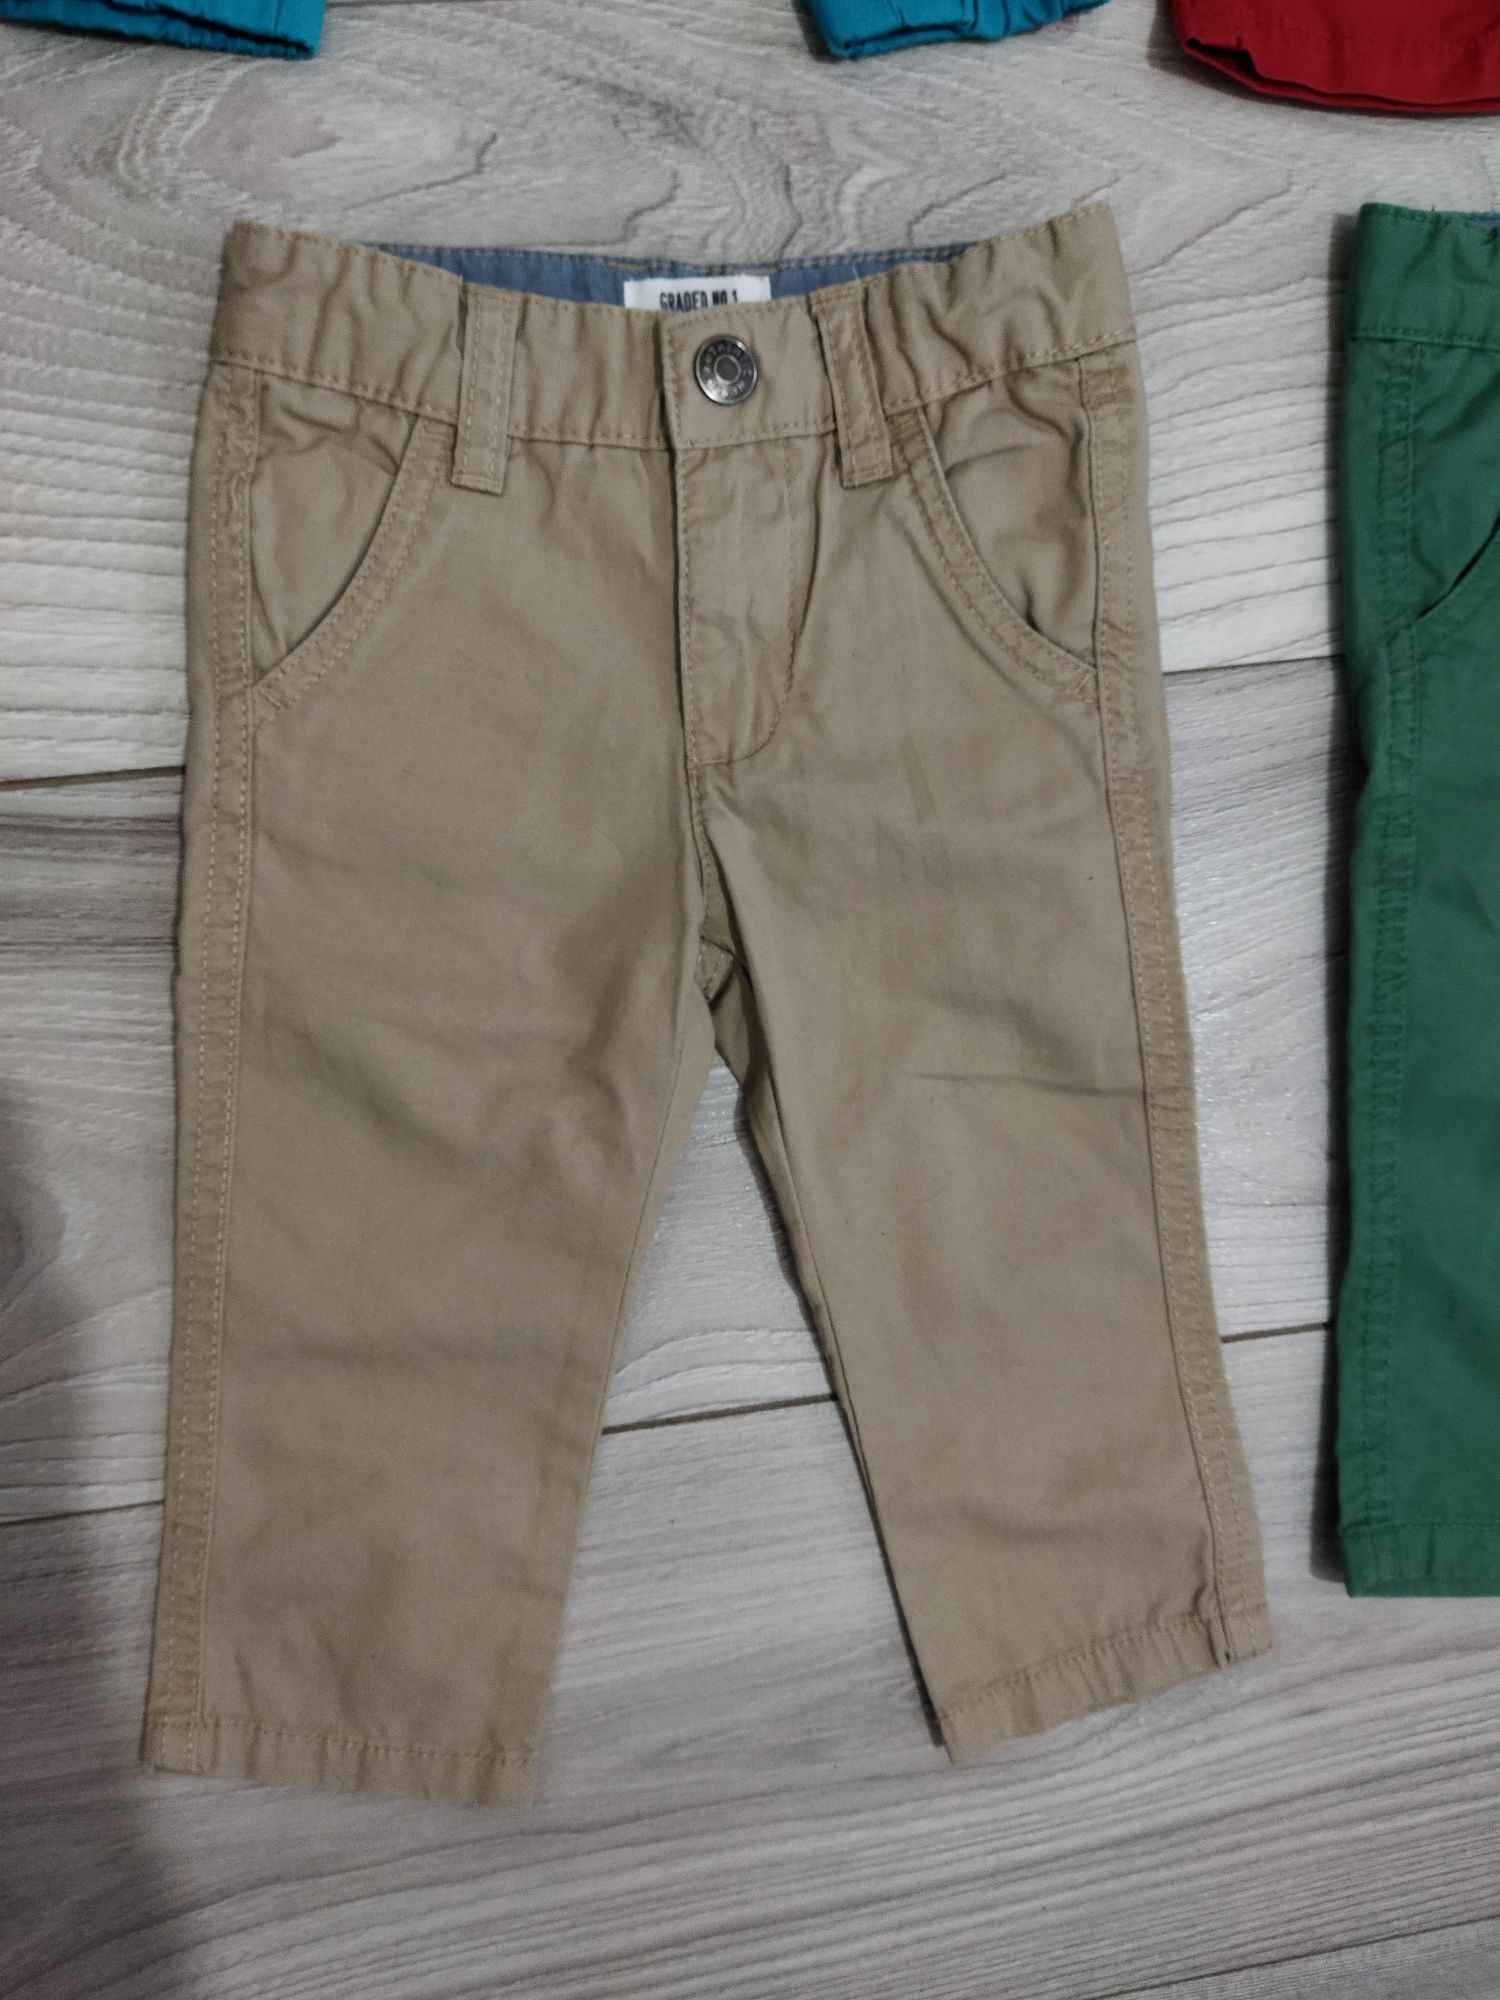 Lot 5 perechi de pantaloni eleganți subțiri băiat 9-12 luni mărimea 80